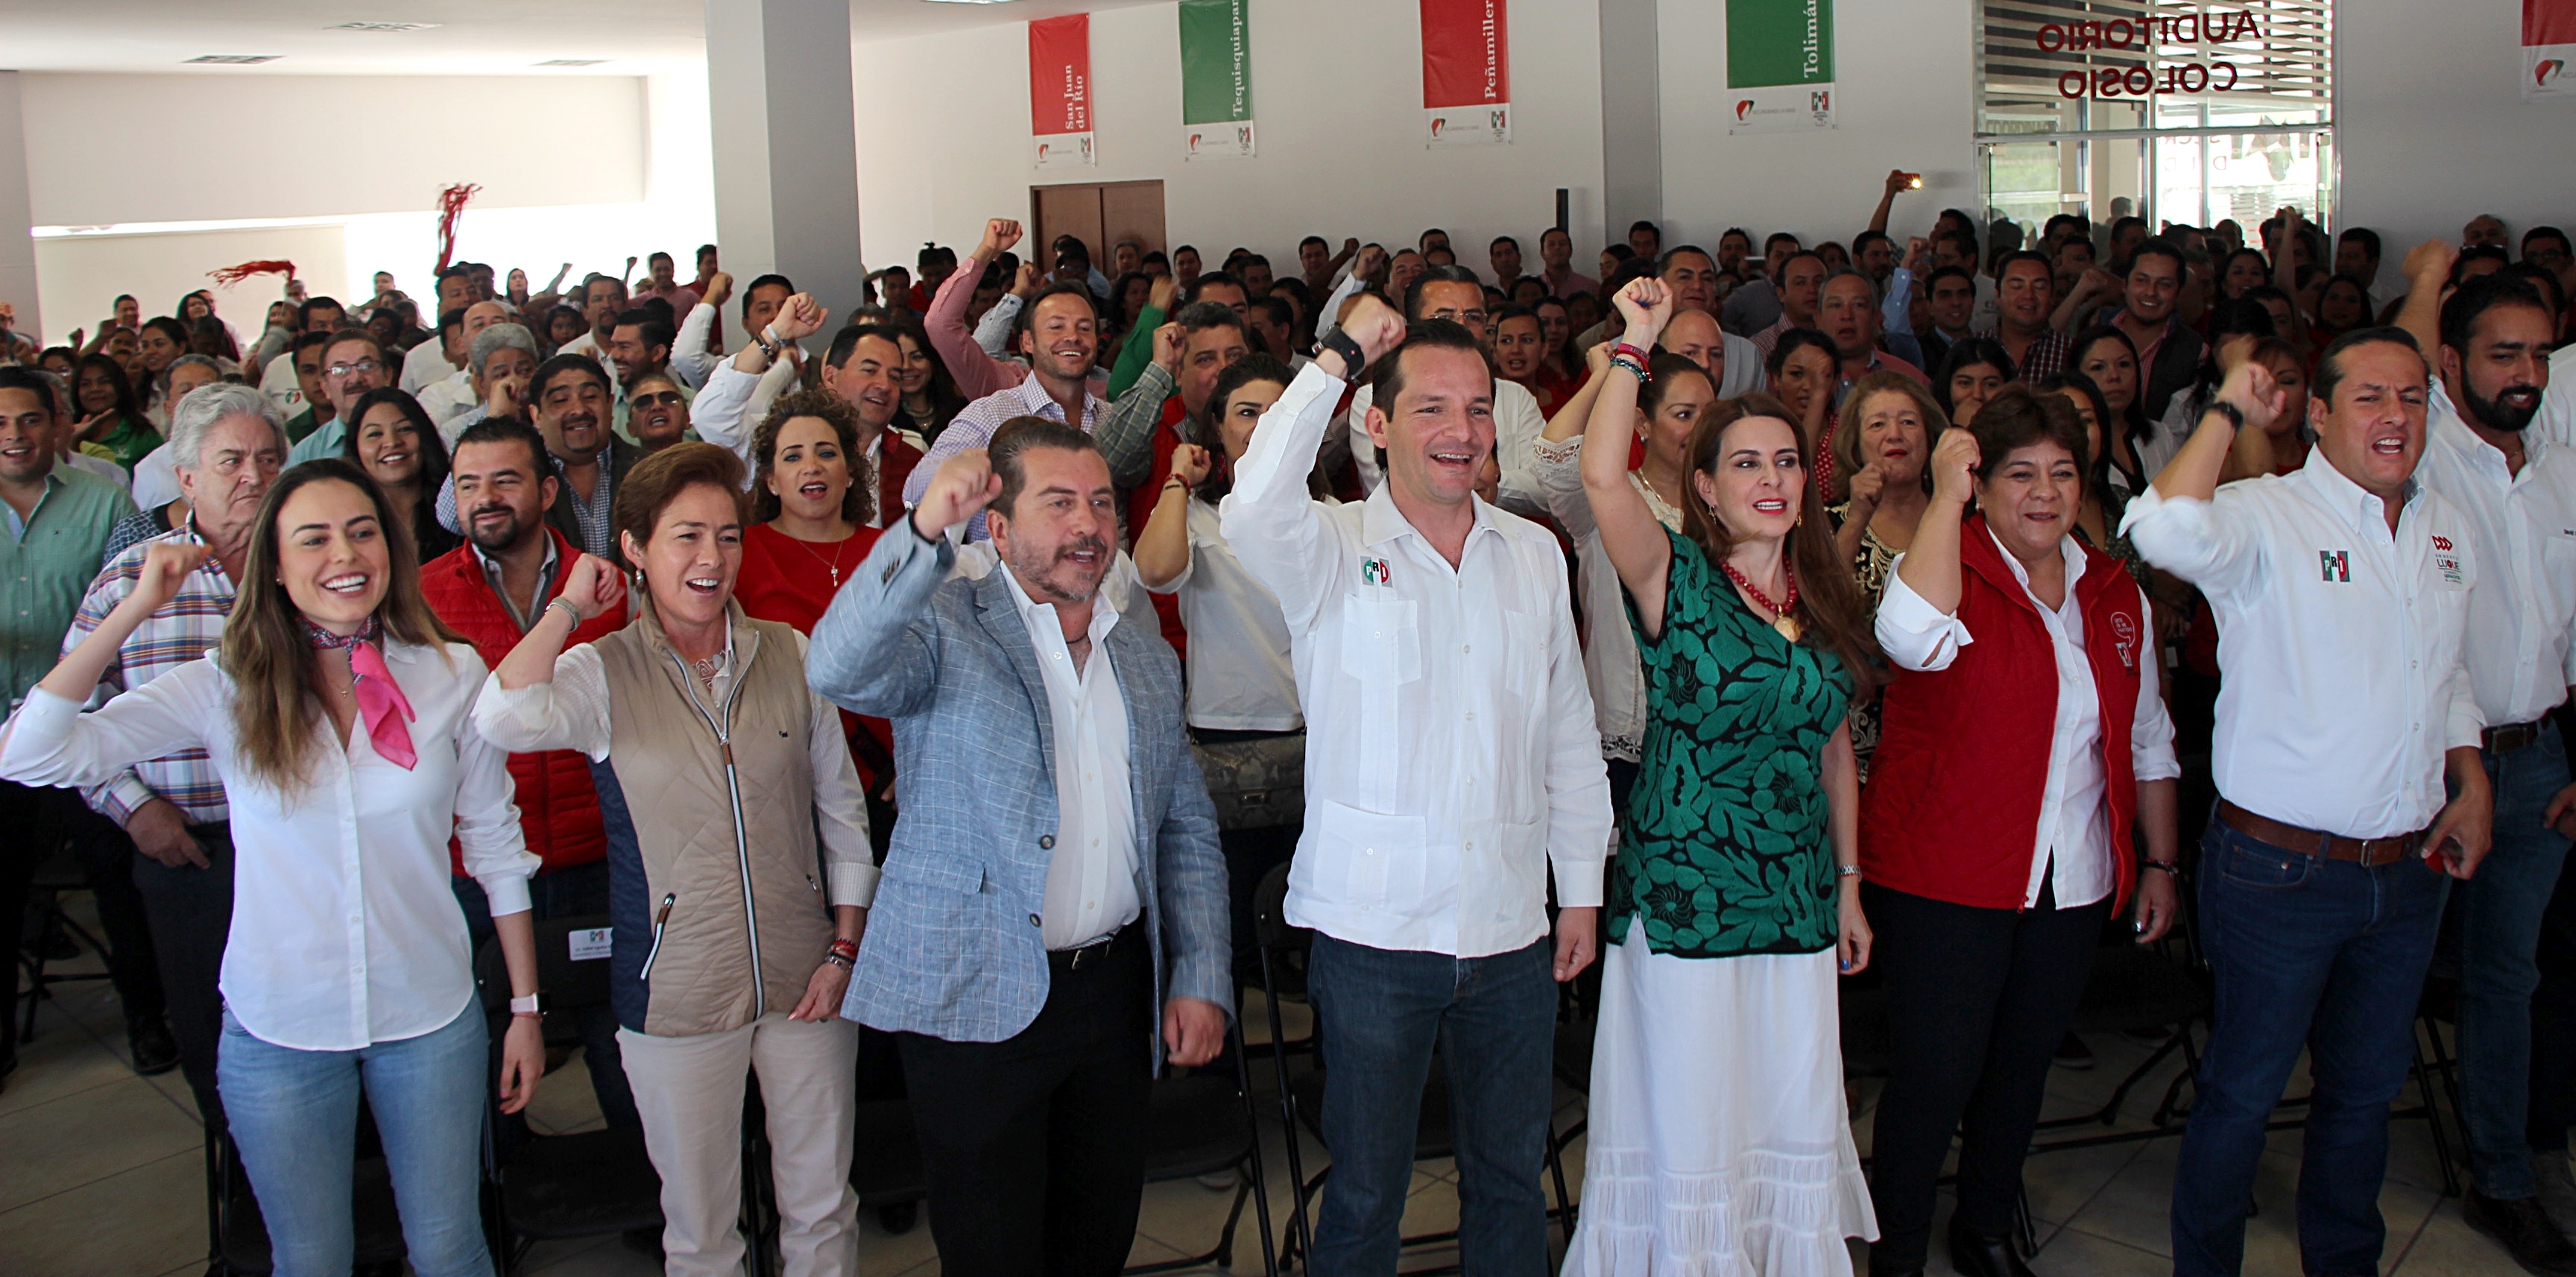 Afirma el PRI que Acción Nacional busca enrarecer el proceso electoral en Querétaro